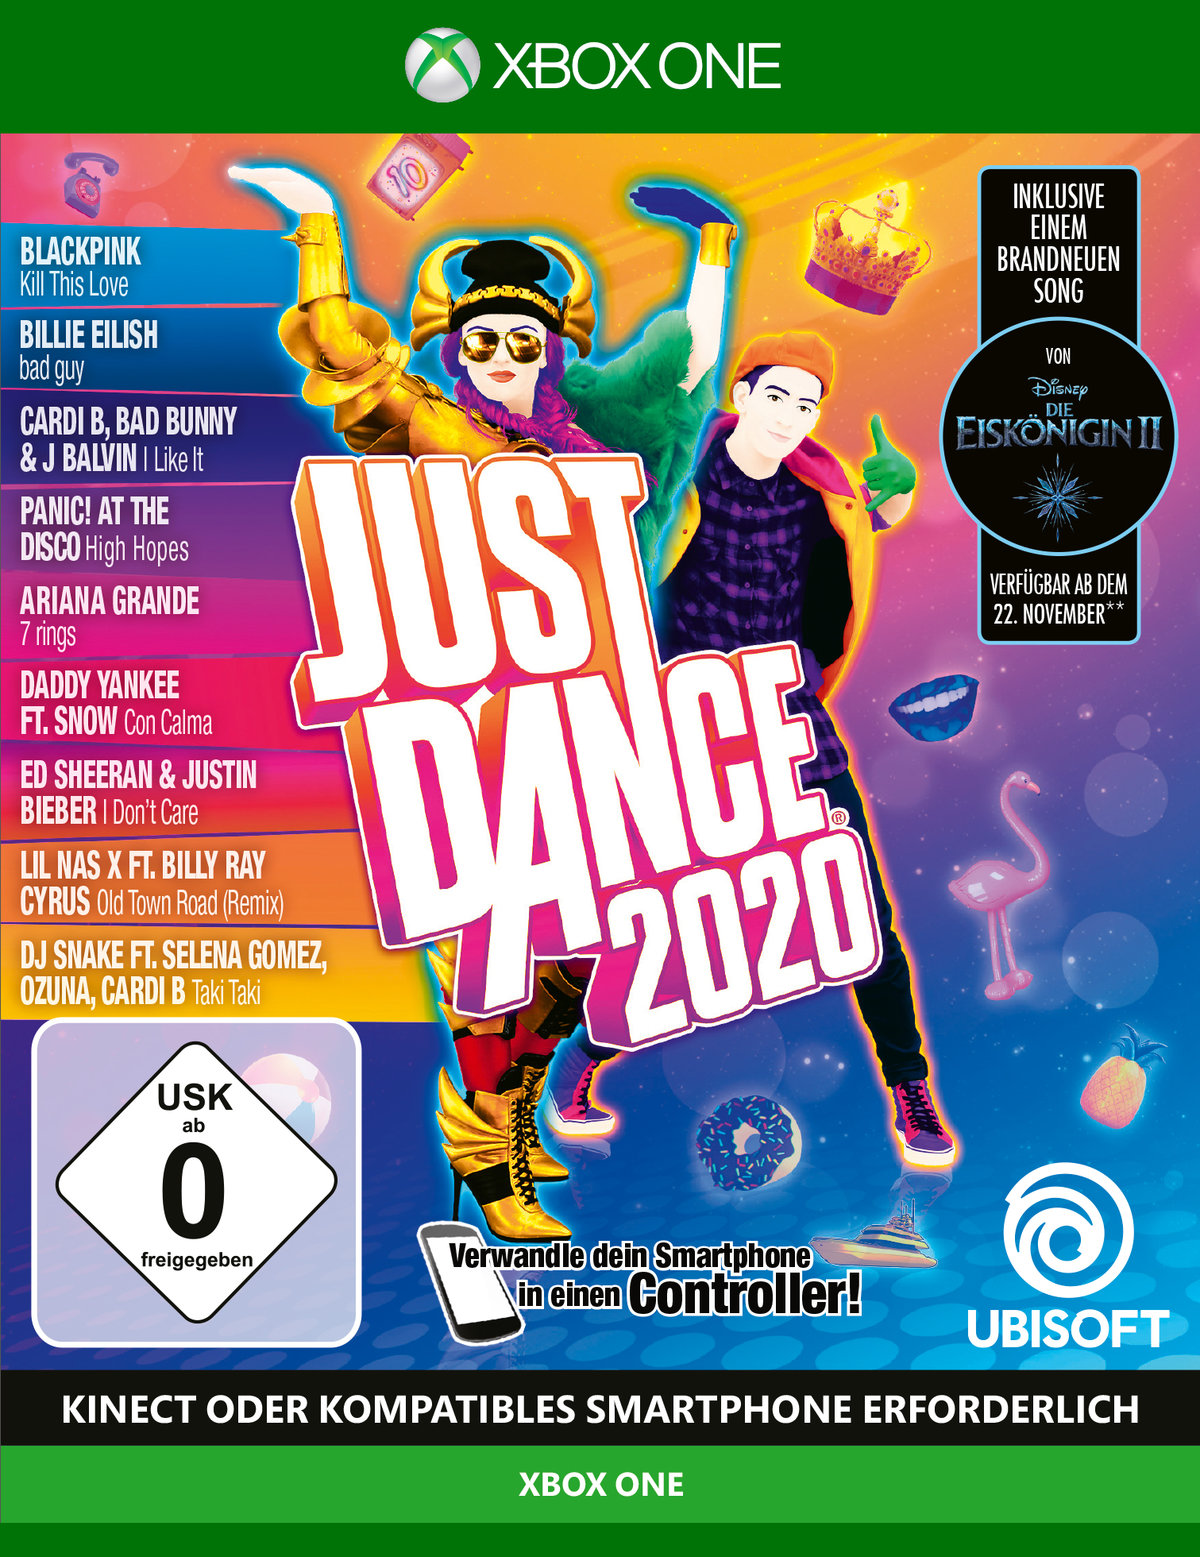 Just Dance 2020 von Ubisoft